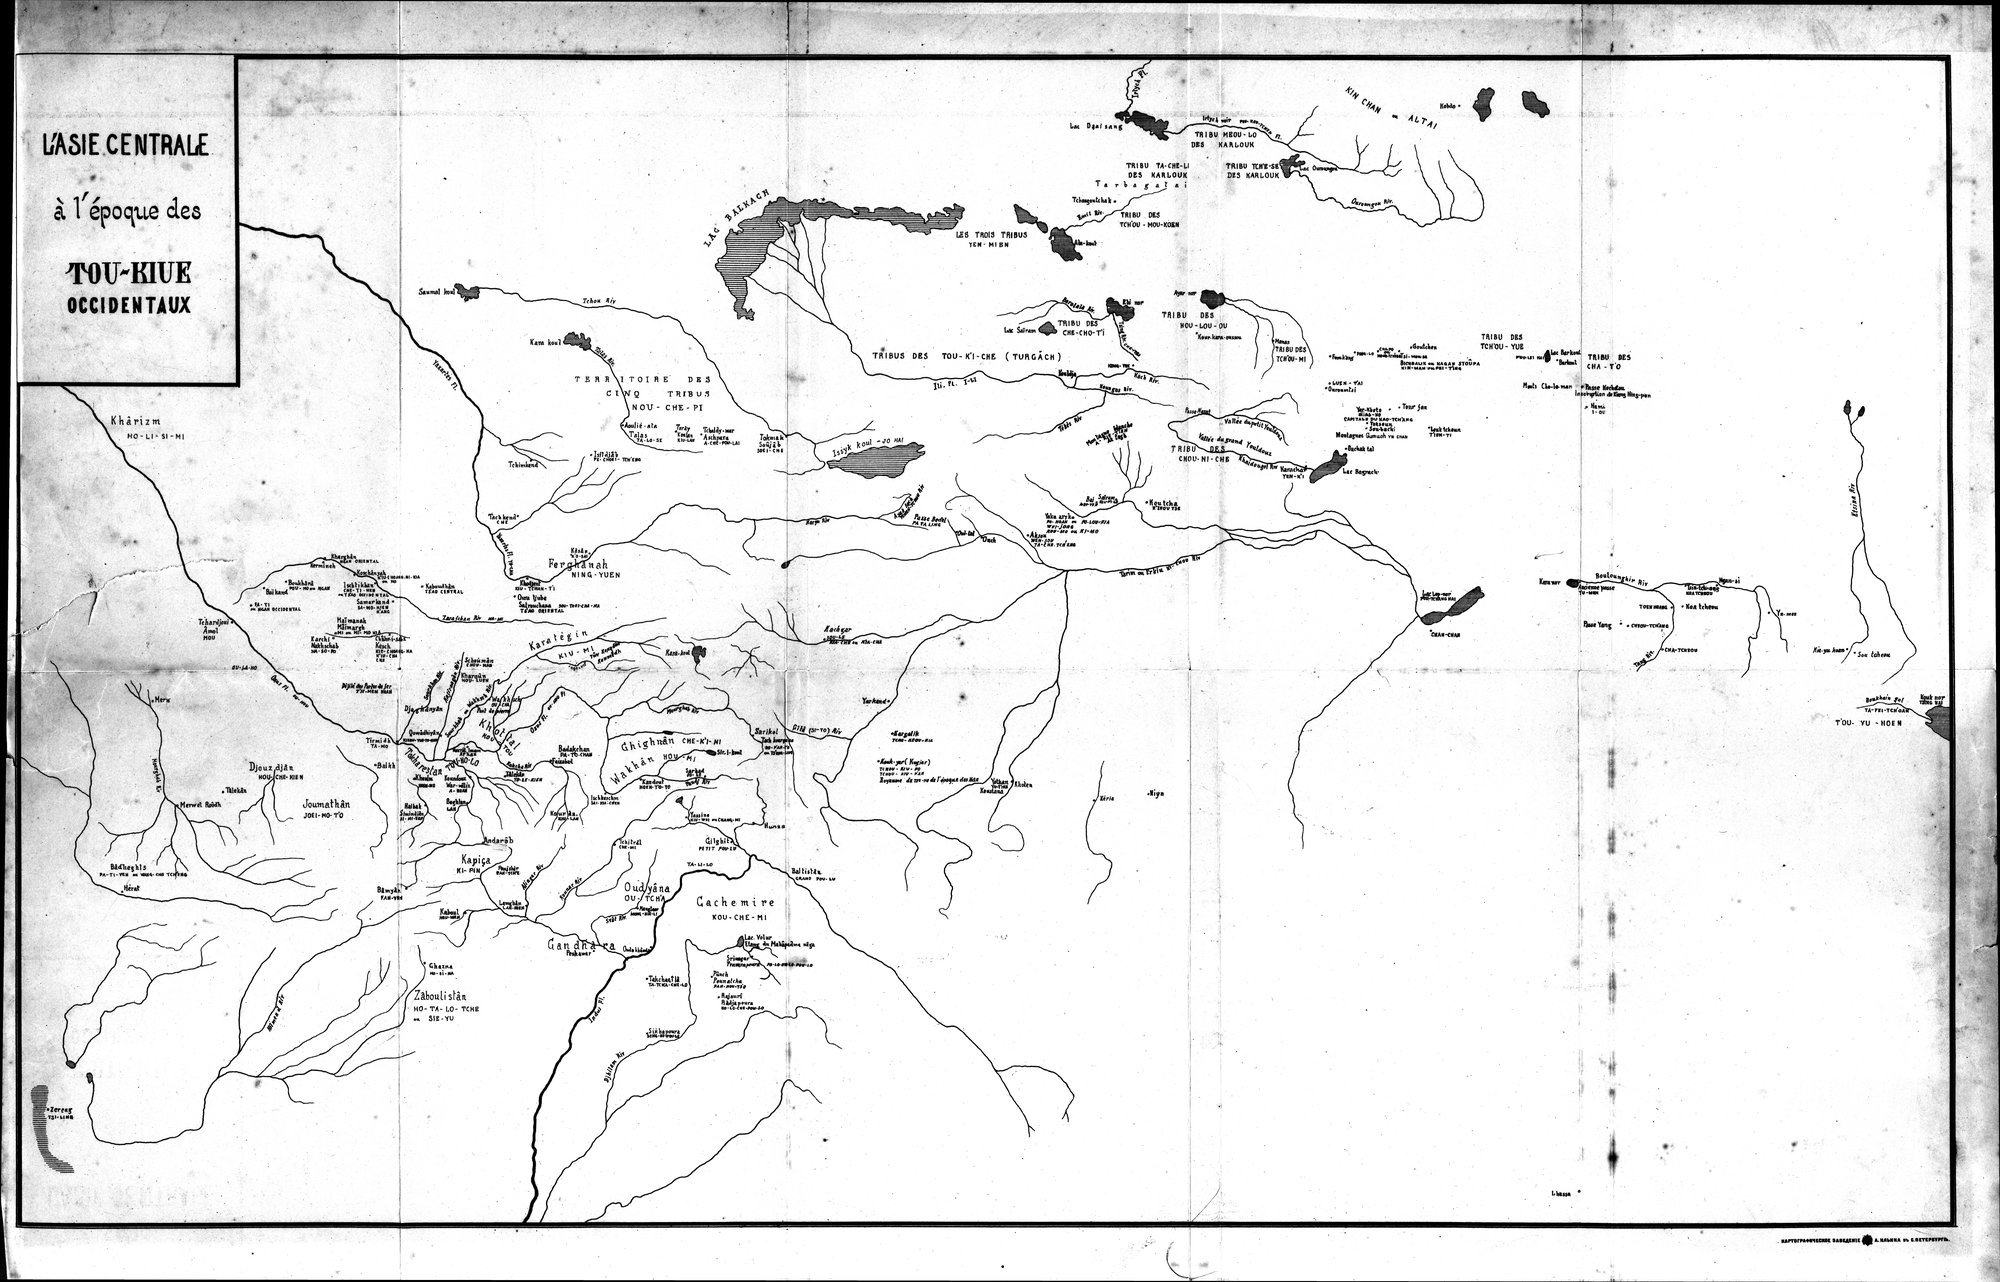 Documents sur les Tou-kiue (Turcs) occidentaux : vol.1 / Page 389 (Grayscale High Resolution Image)